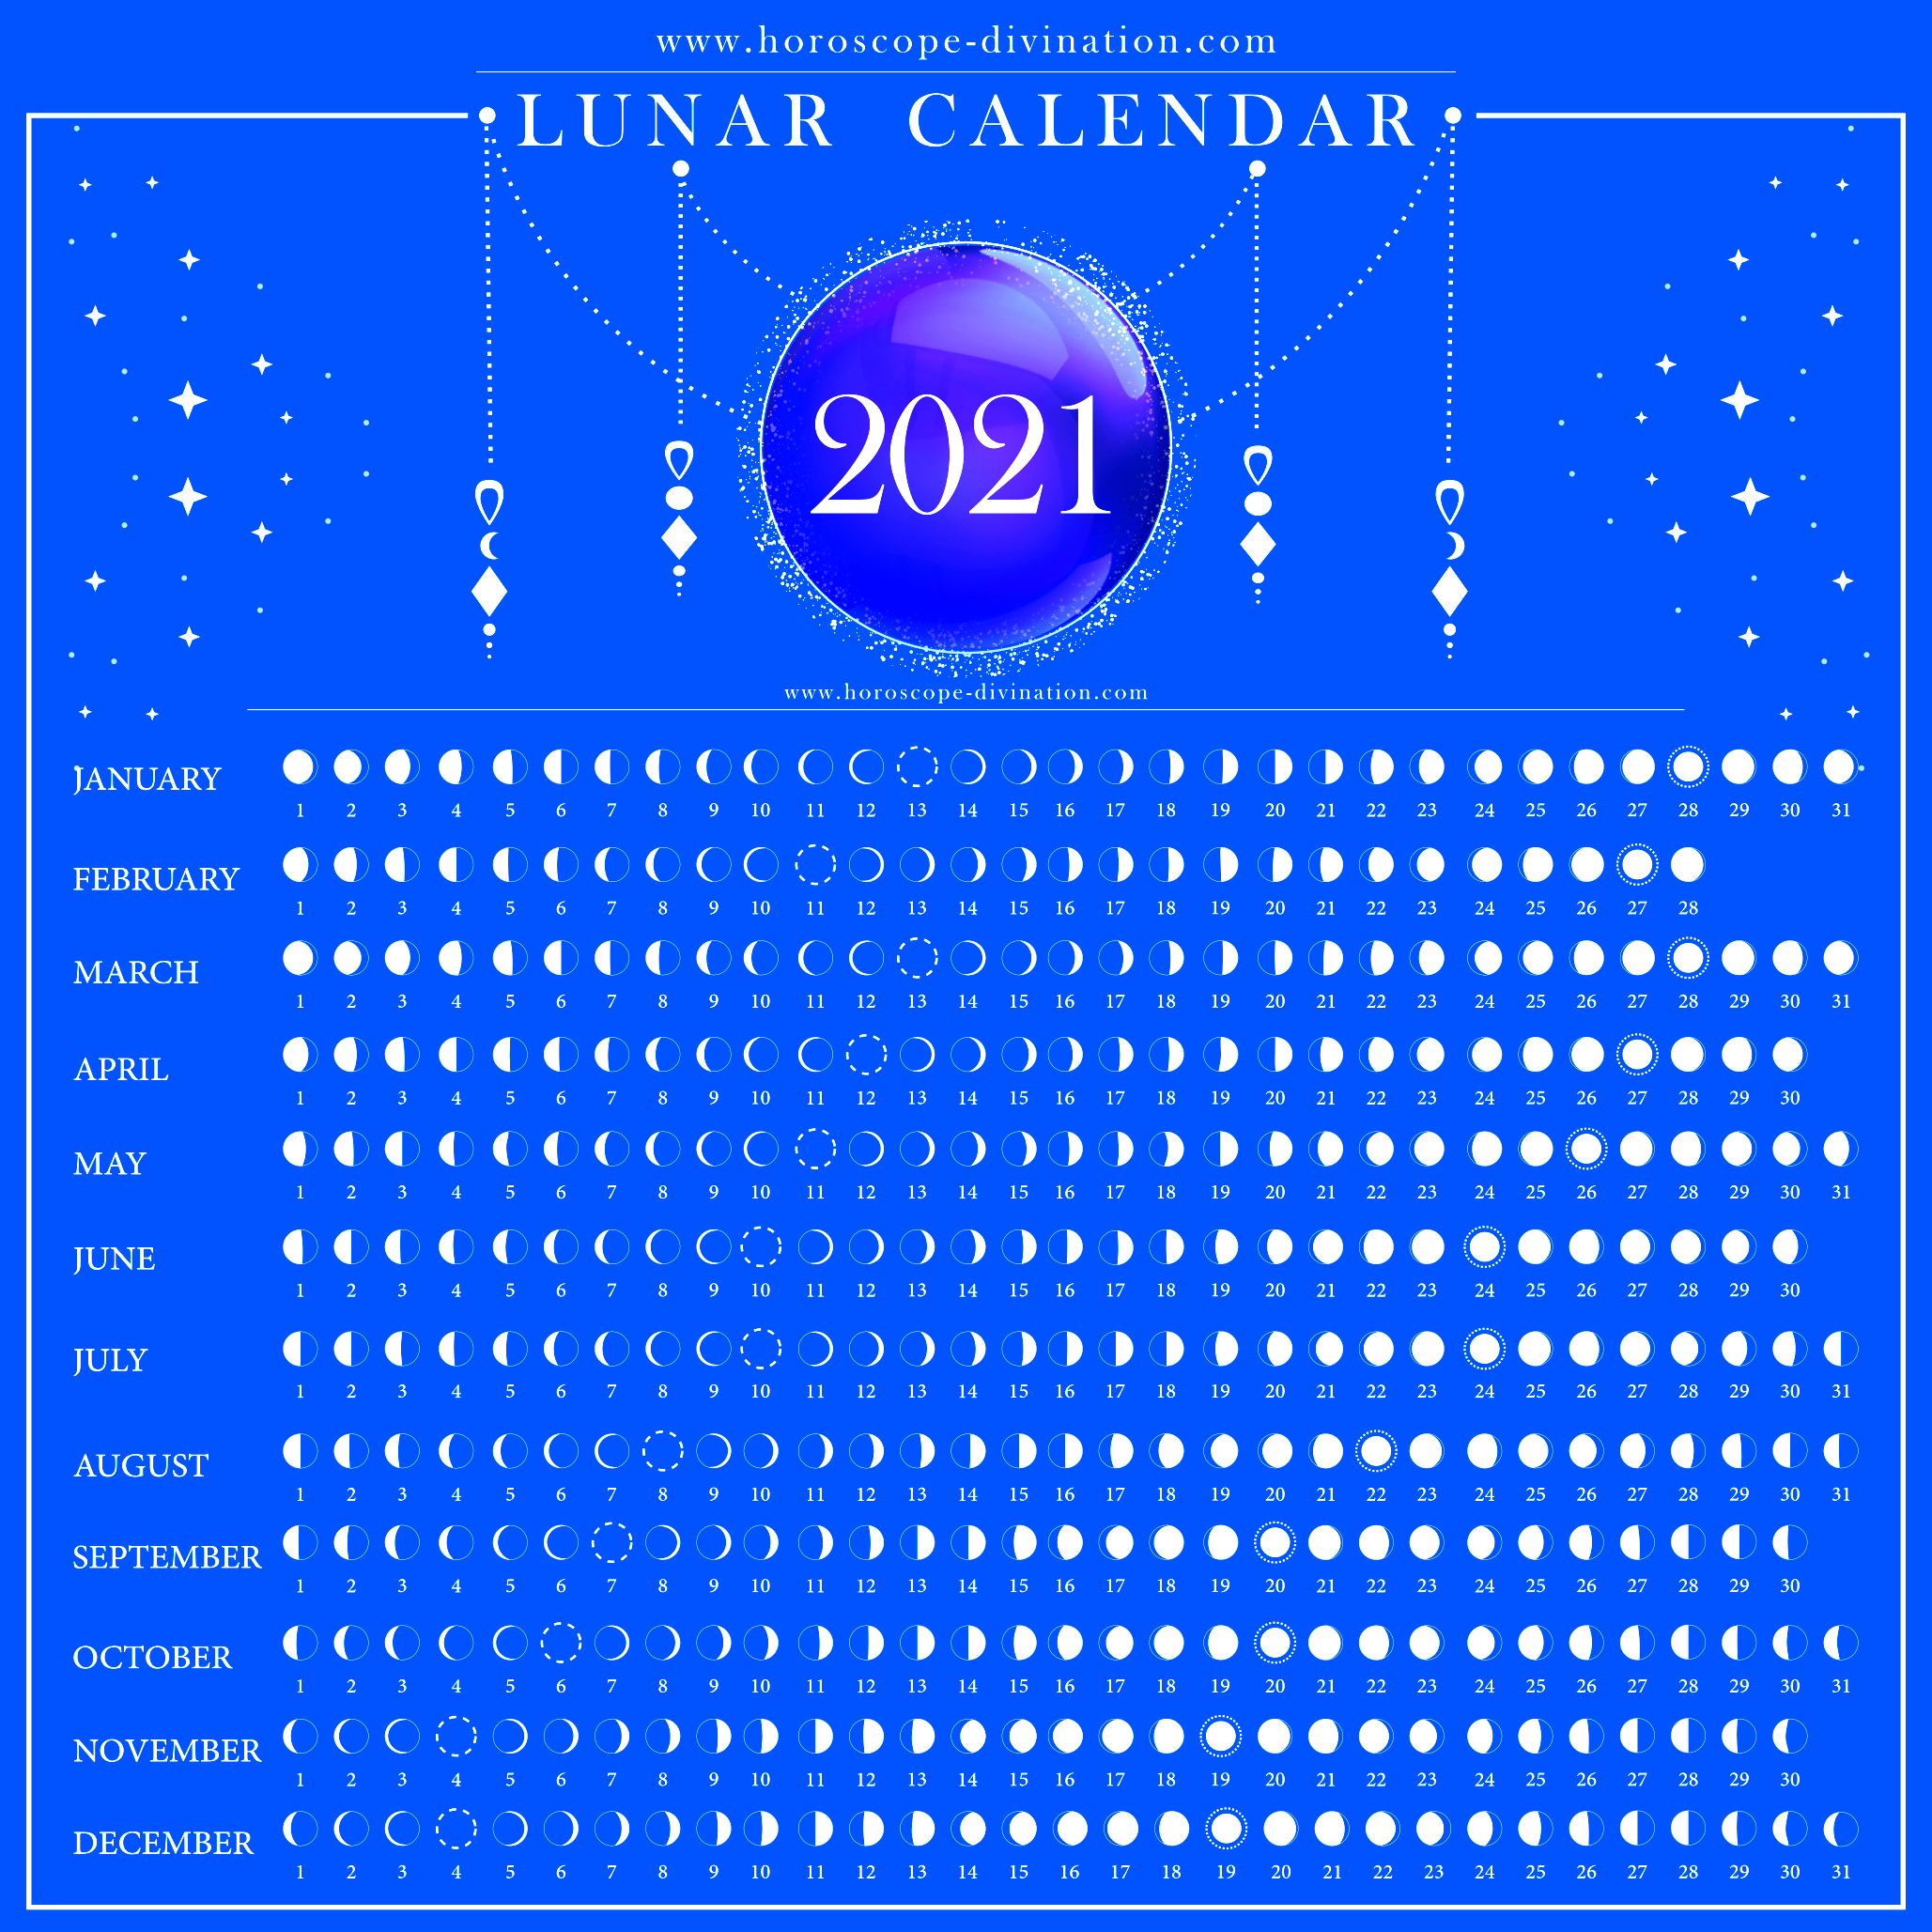 lunar calendar 2021 - new moon, full moon